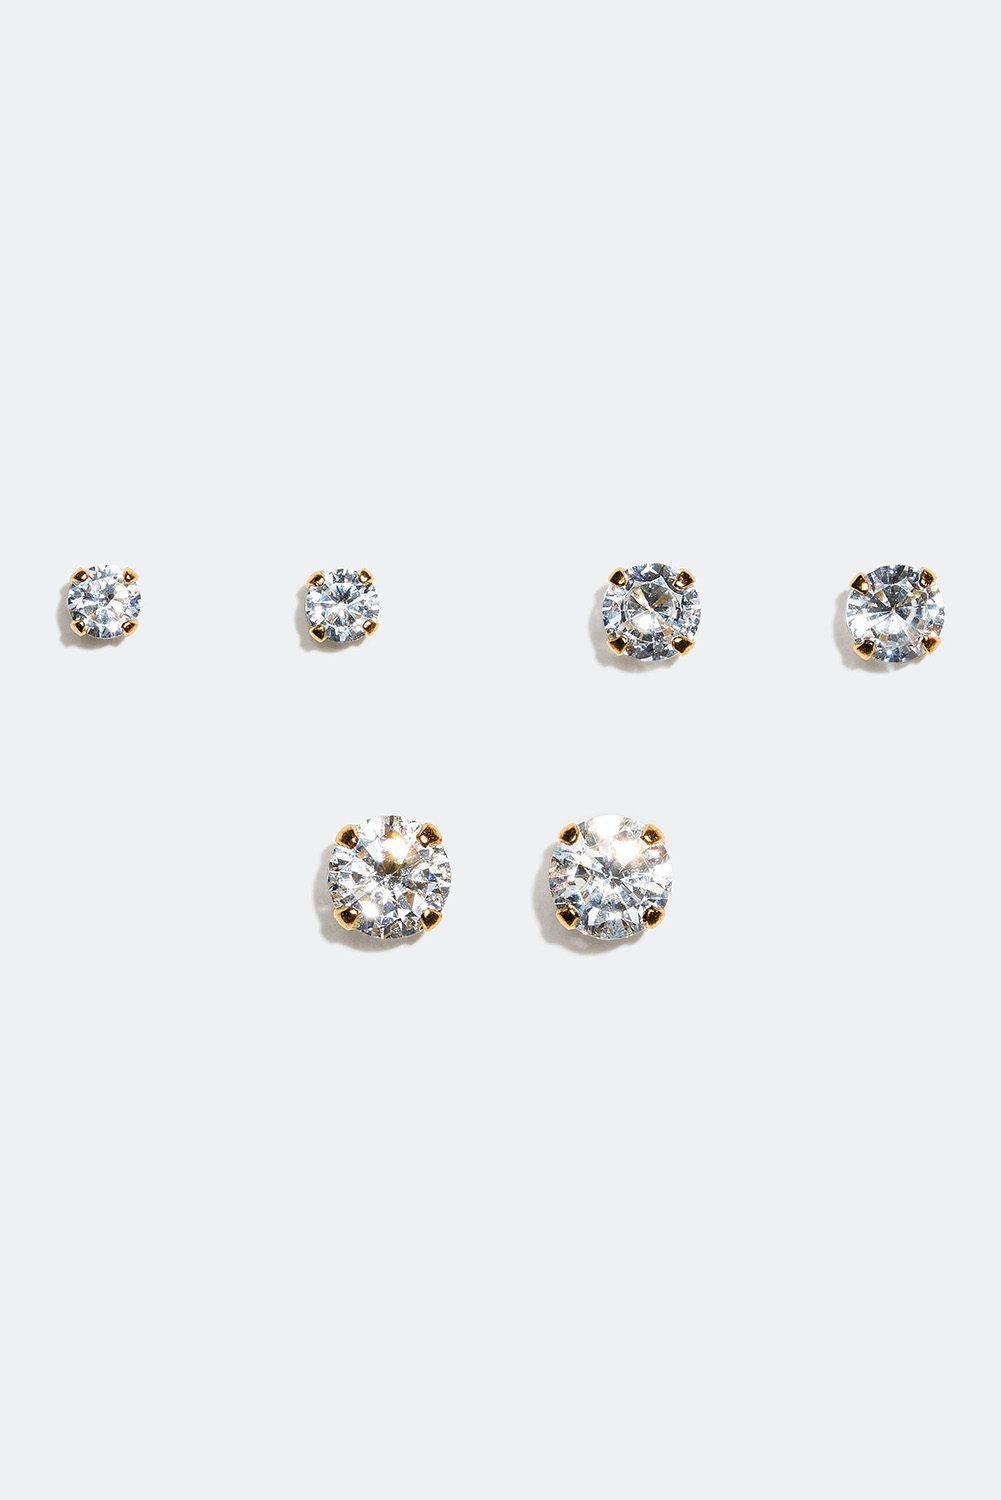 Nappikorvakorut pyöreillä lasikivillä, 18 karaatin kultaus, 4 mm, 3 paria ryhmässä Korut / Korvakorut / Nappikorvakorut @ Glitter (306849661000)